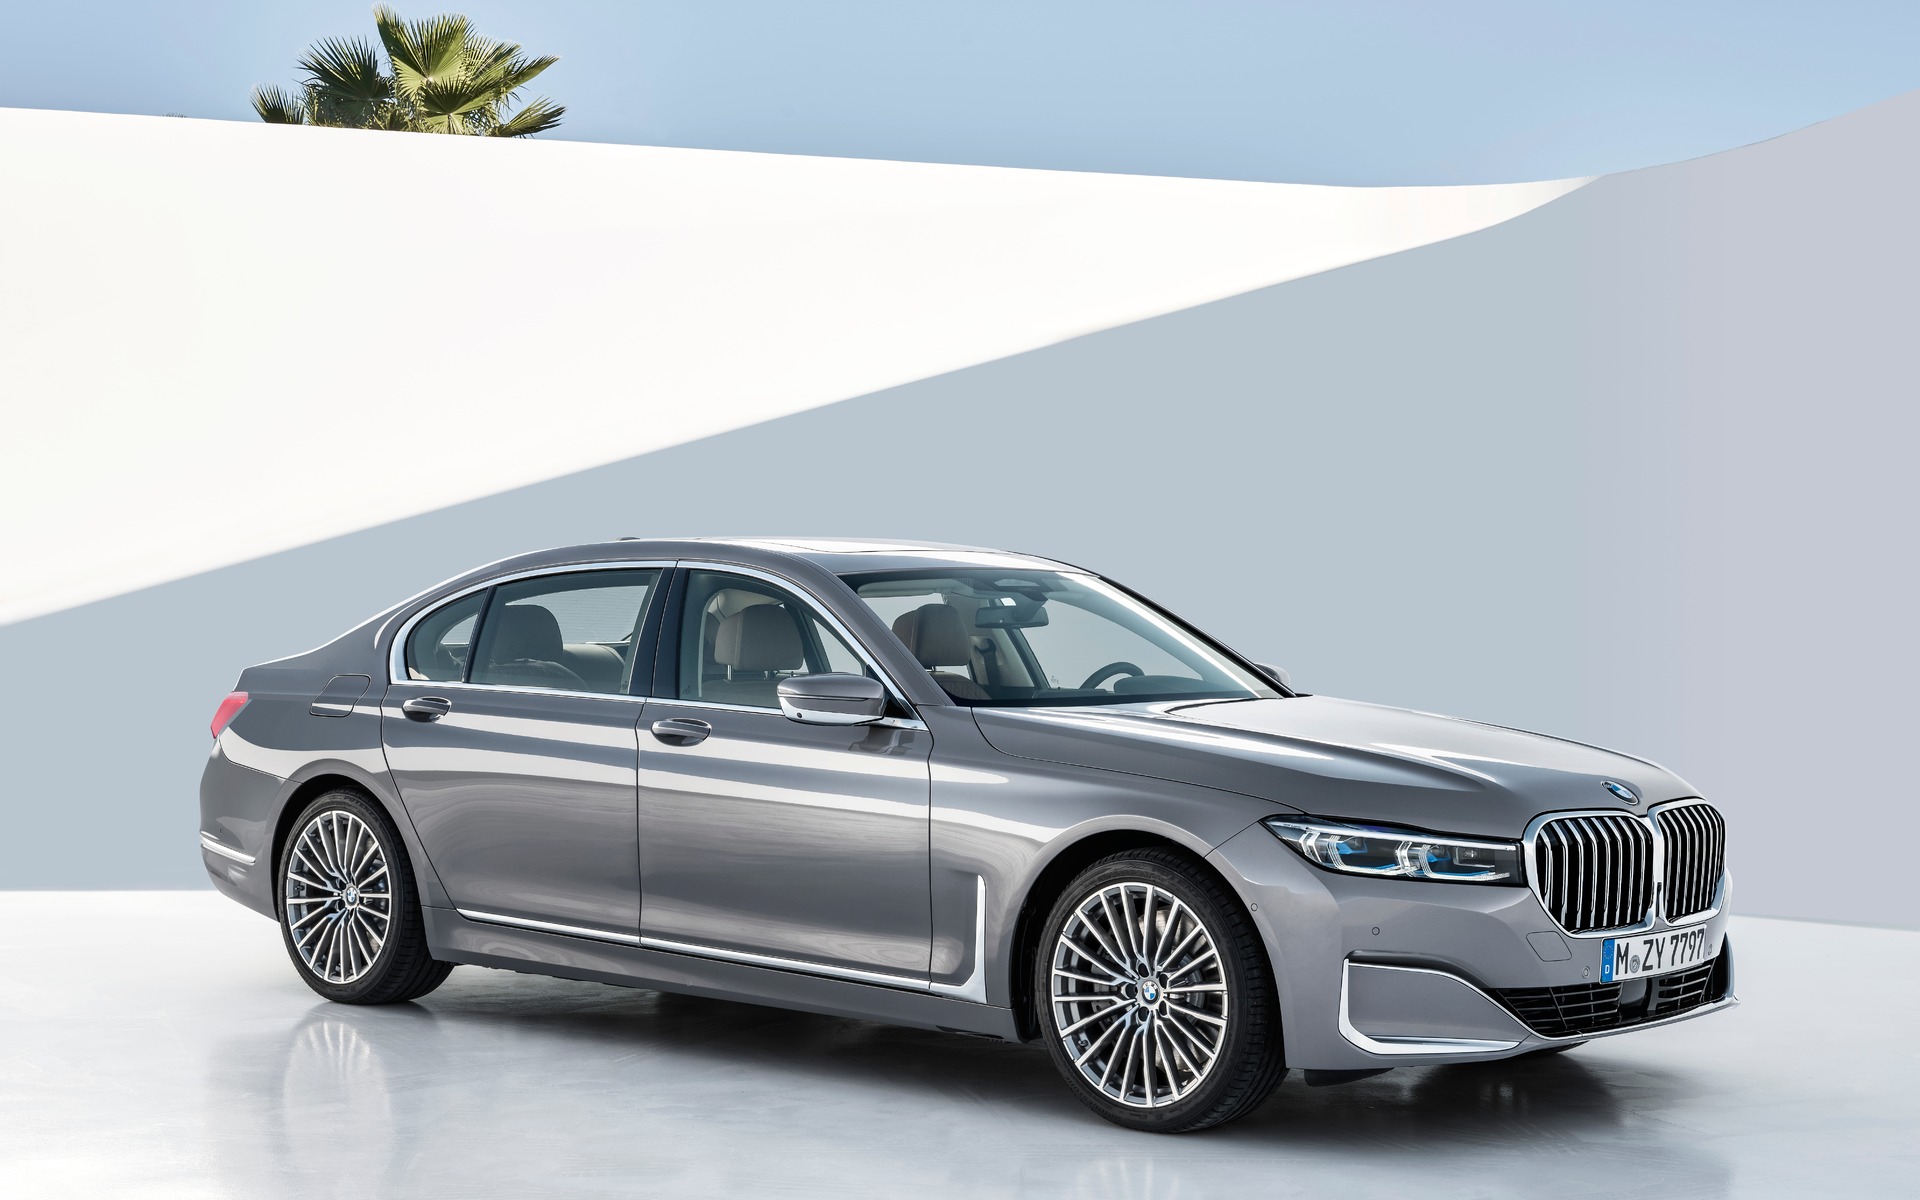 Tải hình ảnh BMW 7 Series chất lượng cao miễn phí 13